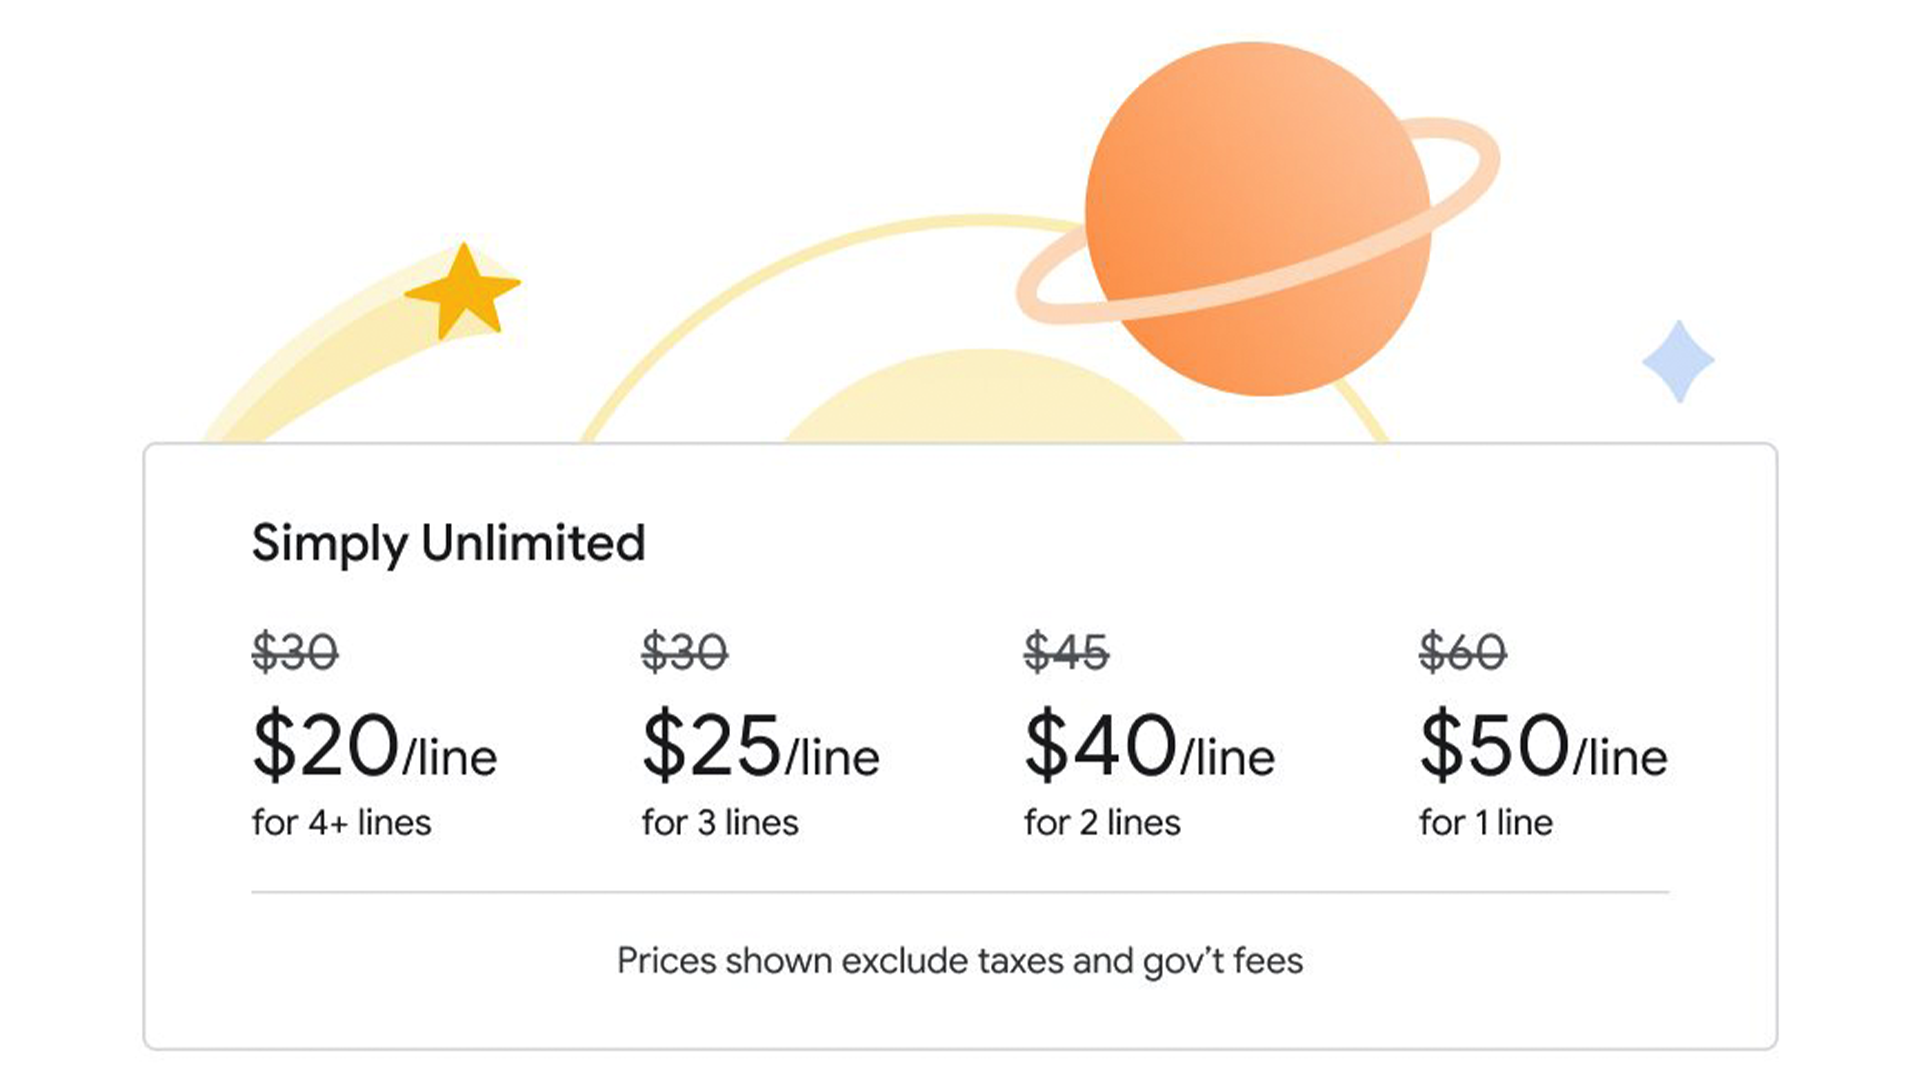 Les nouveaux tarifs illimités de Google Fi commencent à 50 $ pour une ligne.